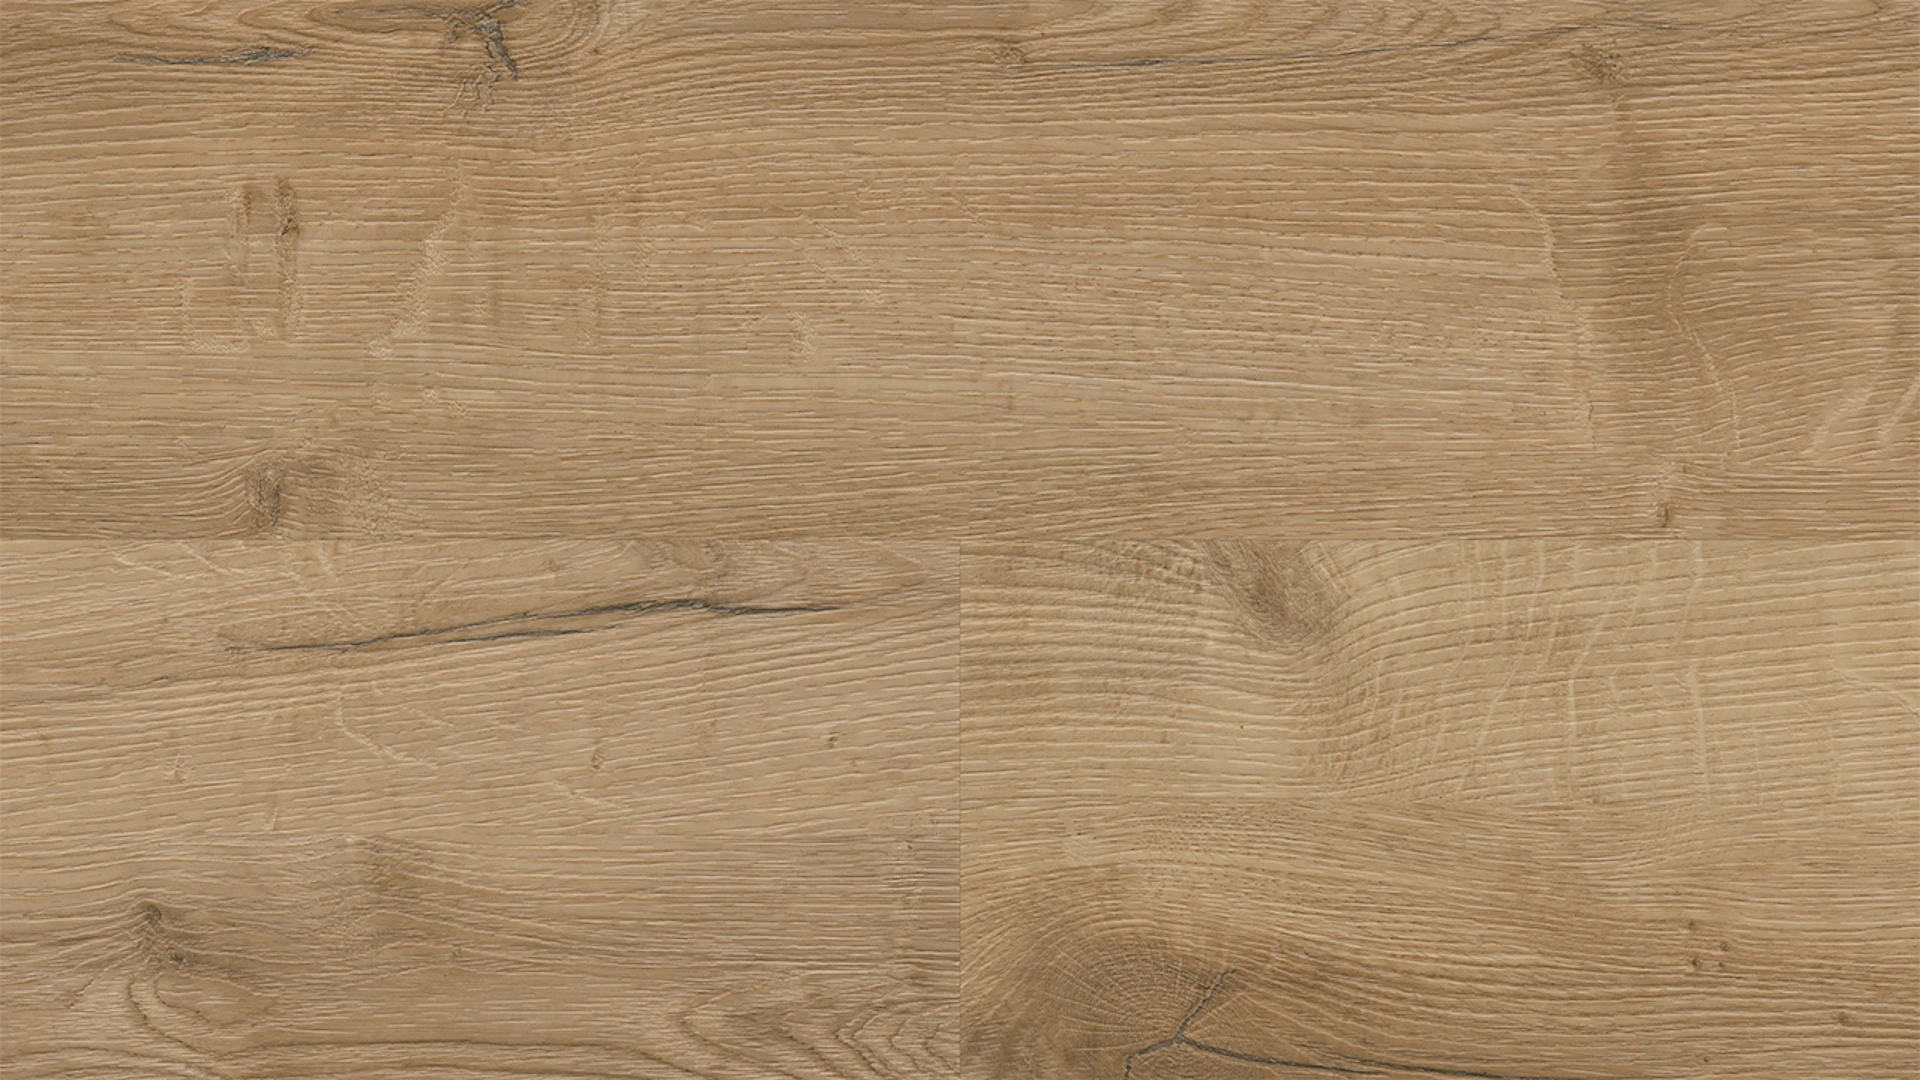 Wineo Klebevinyl - 400 wood XL Comfort Oak Nature | Synchronprägung (DB291WXL)